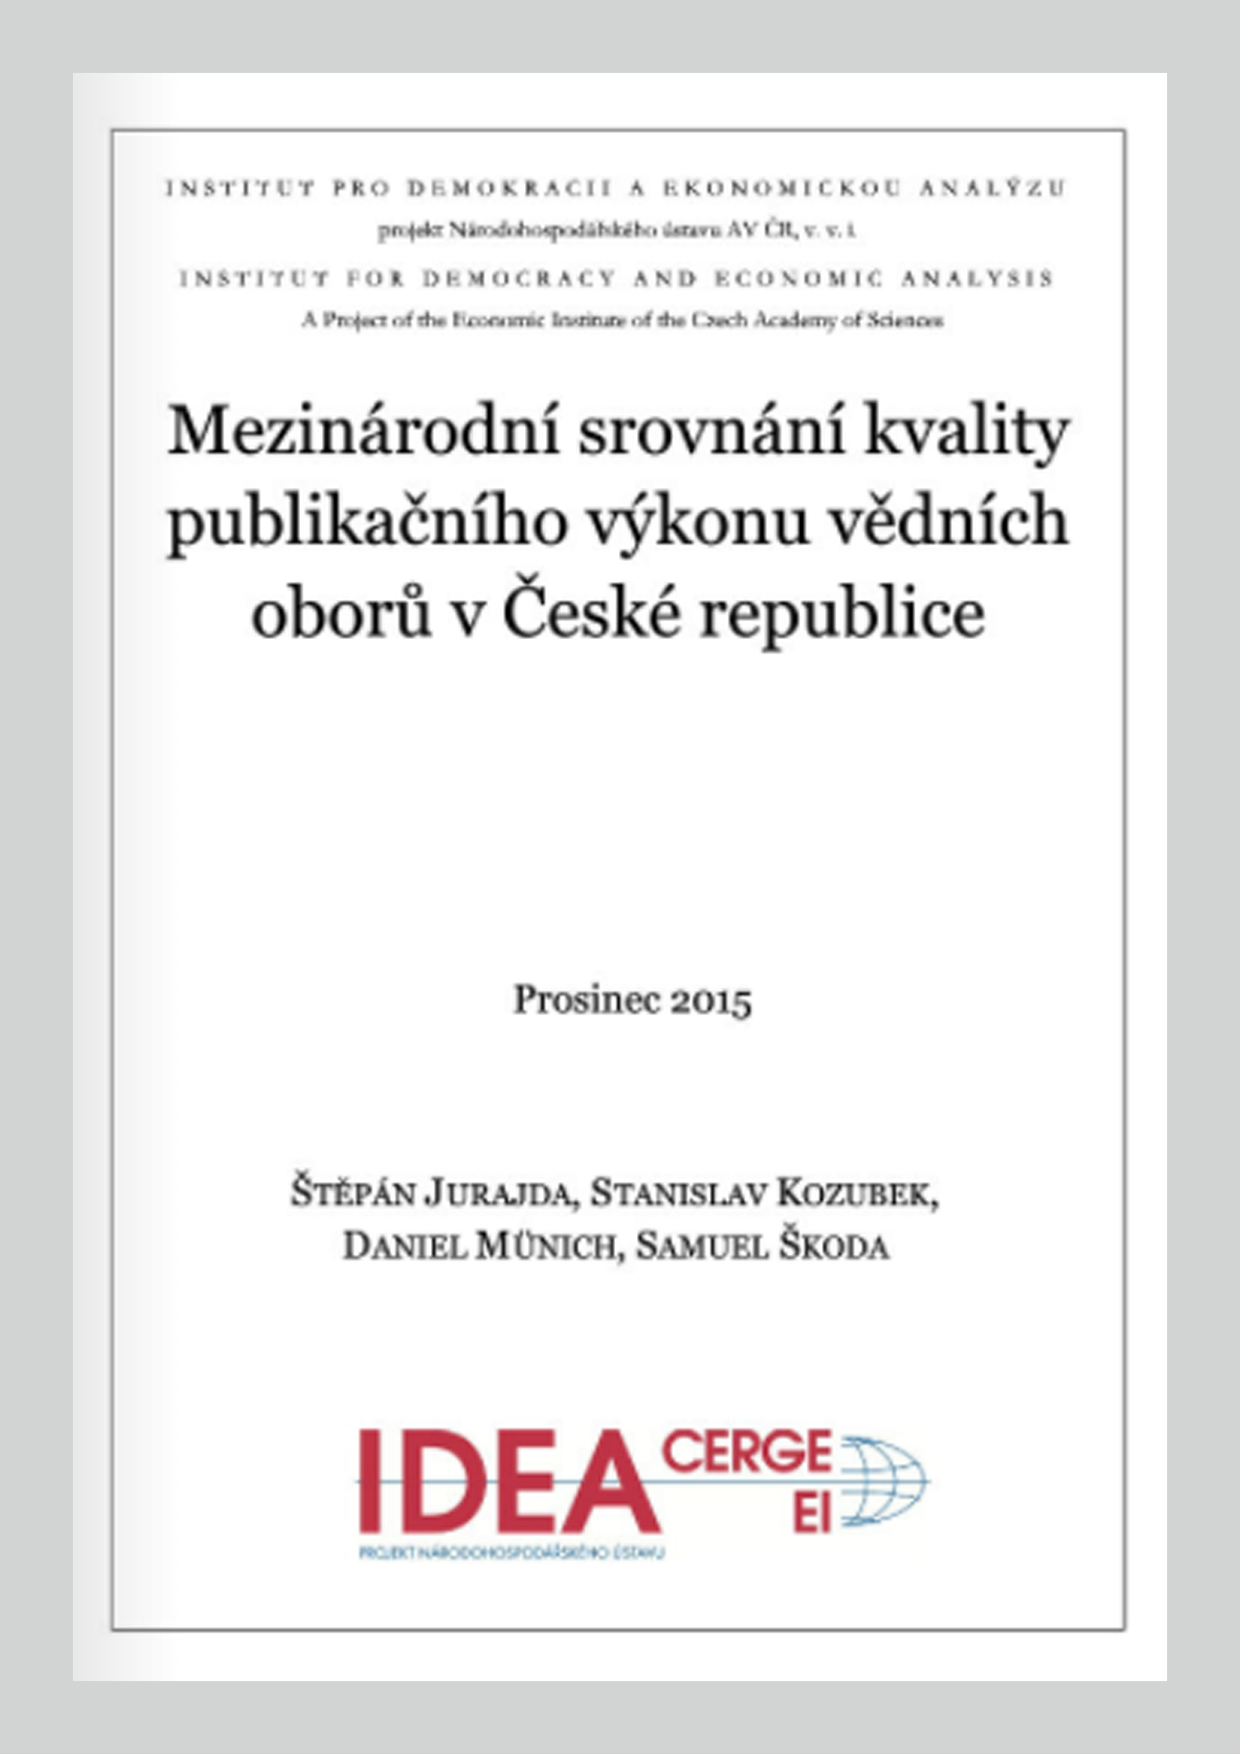 Mezinárodní srovnání kvality publikačního výkonu vědních oborů v České republice